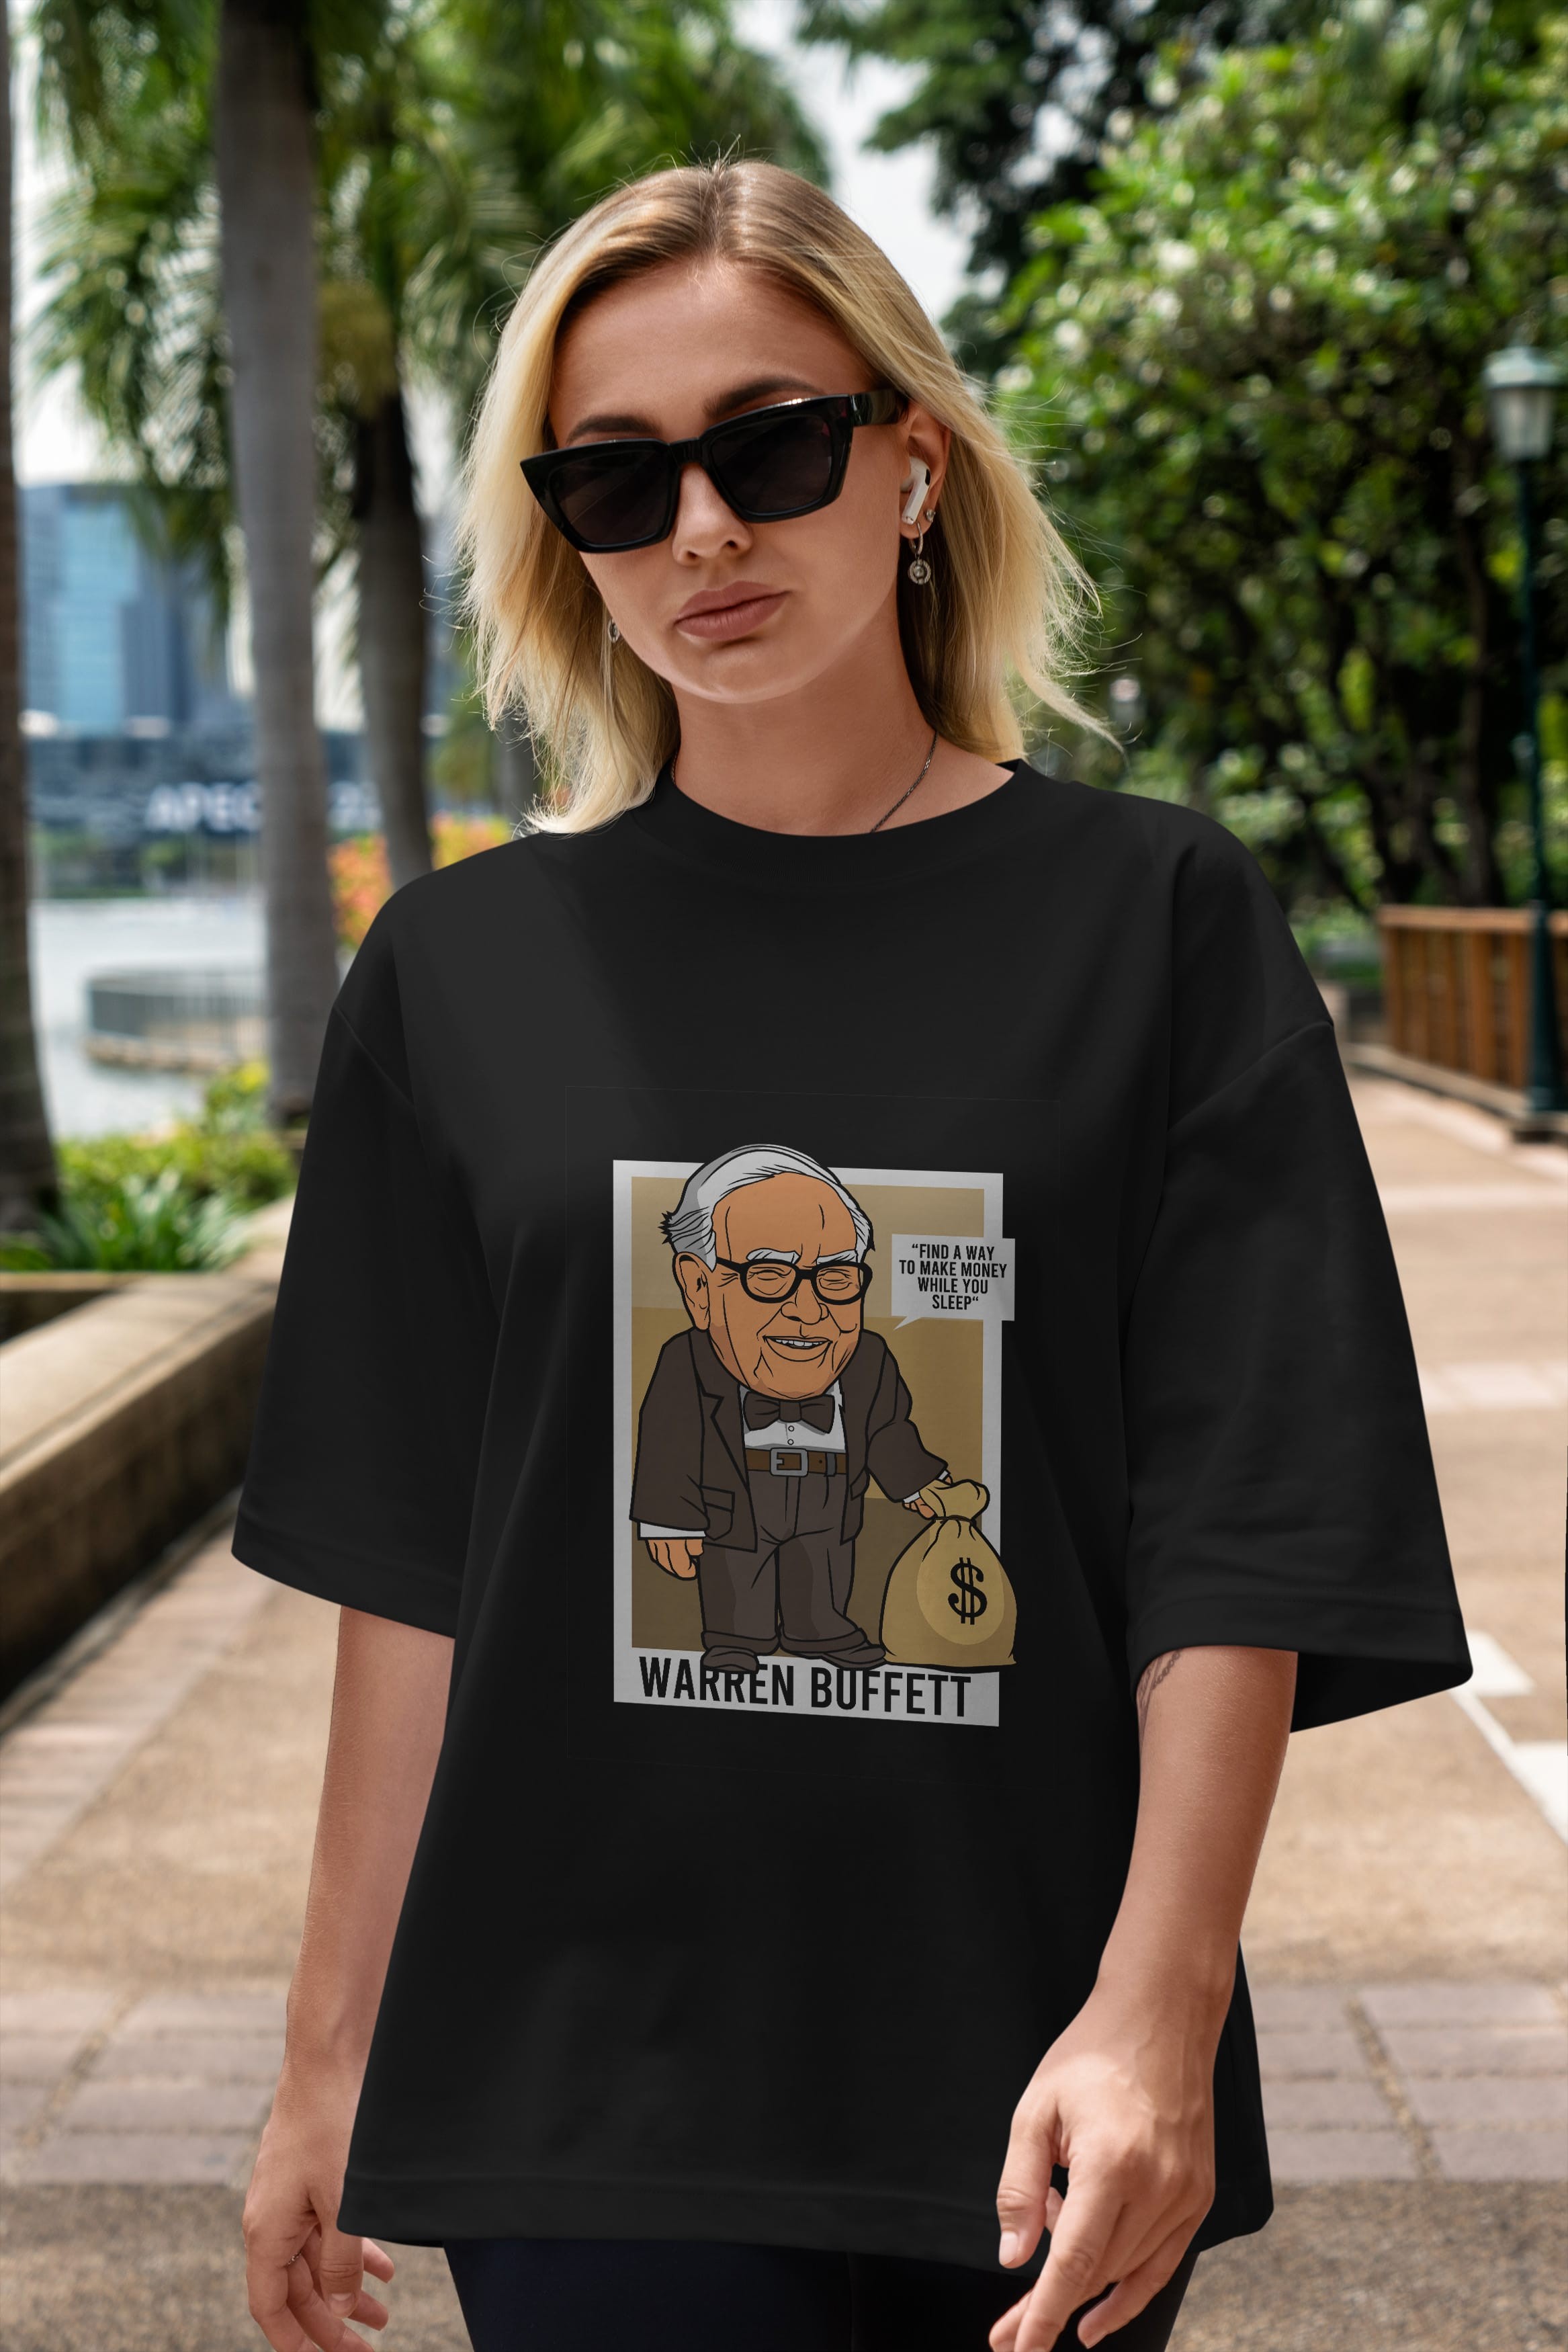 Warren Buffet Up Carl Ön Baskılı Oversize t-shirt Erkek Kadın Unisex %100 Pamuk tişort